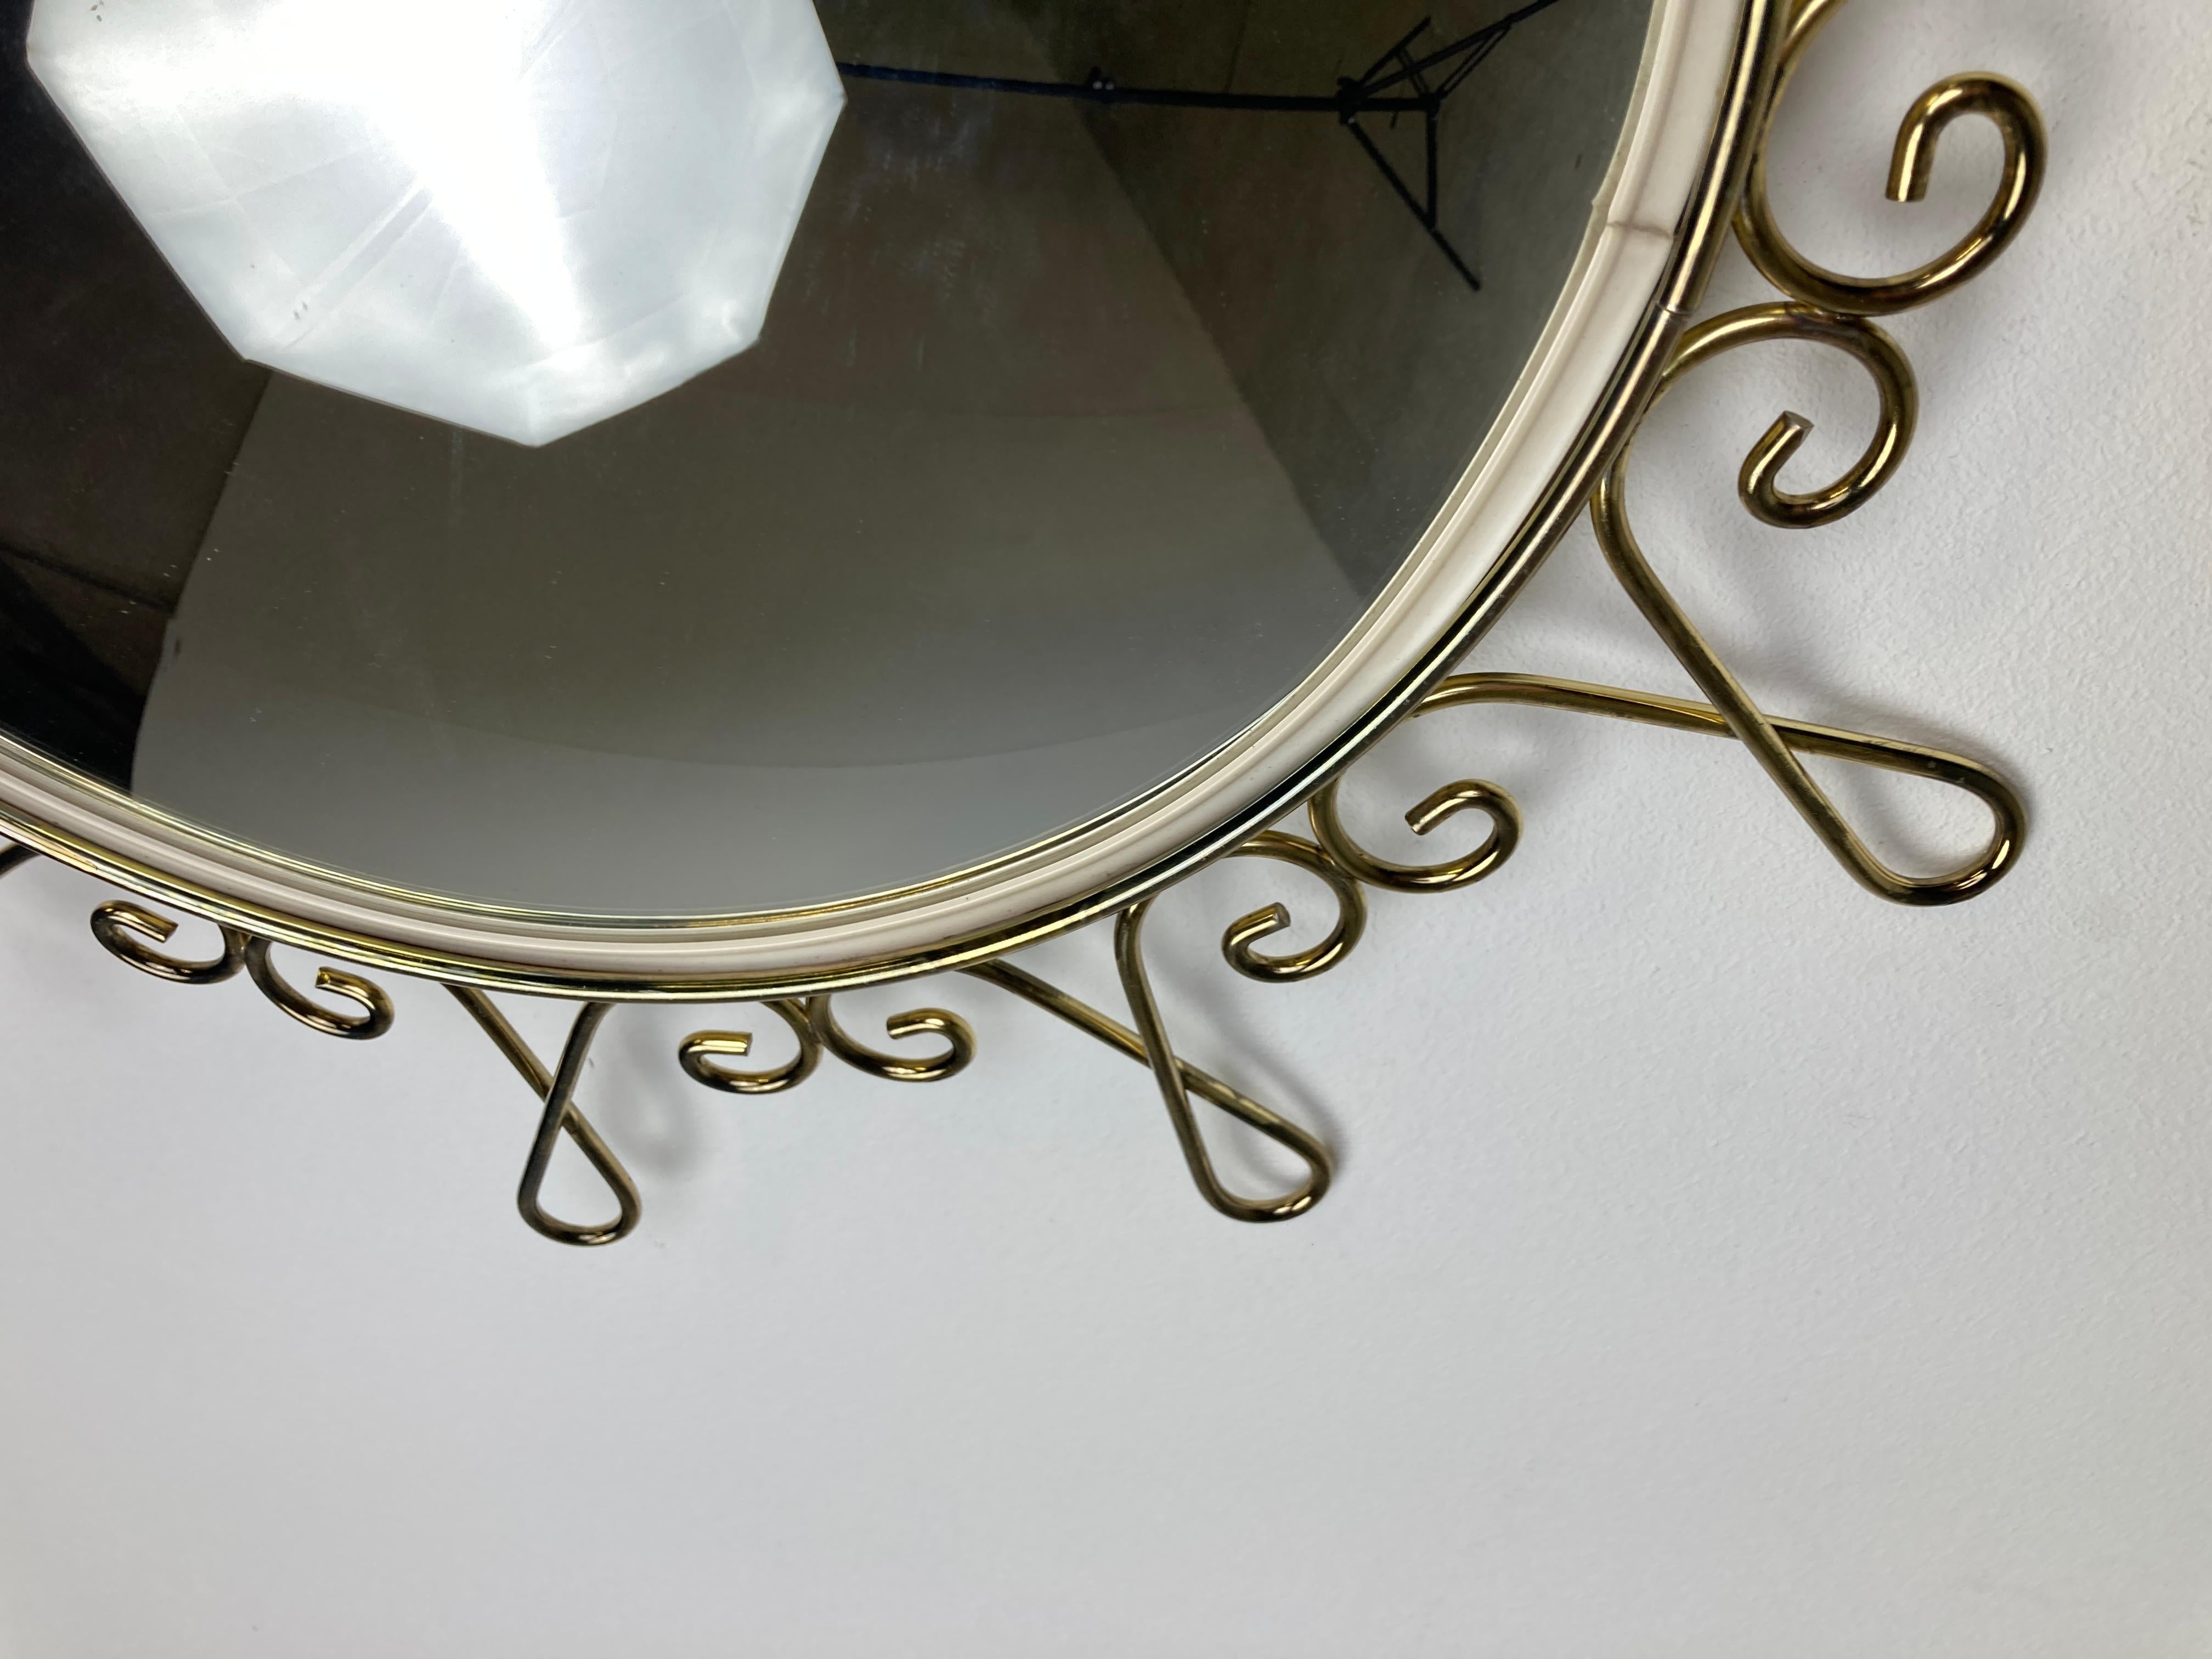 Miroir en laiton du milieu du siècle avec verre convexe.

Ce miroir s'adapte à la plupart des intérieurs et constitue un complément parfait pour un intérieur de style régence.

Le miroir est fabriqué en laiton.

Bon état.

France - années